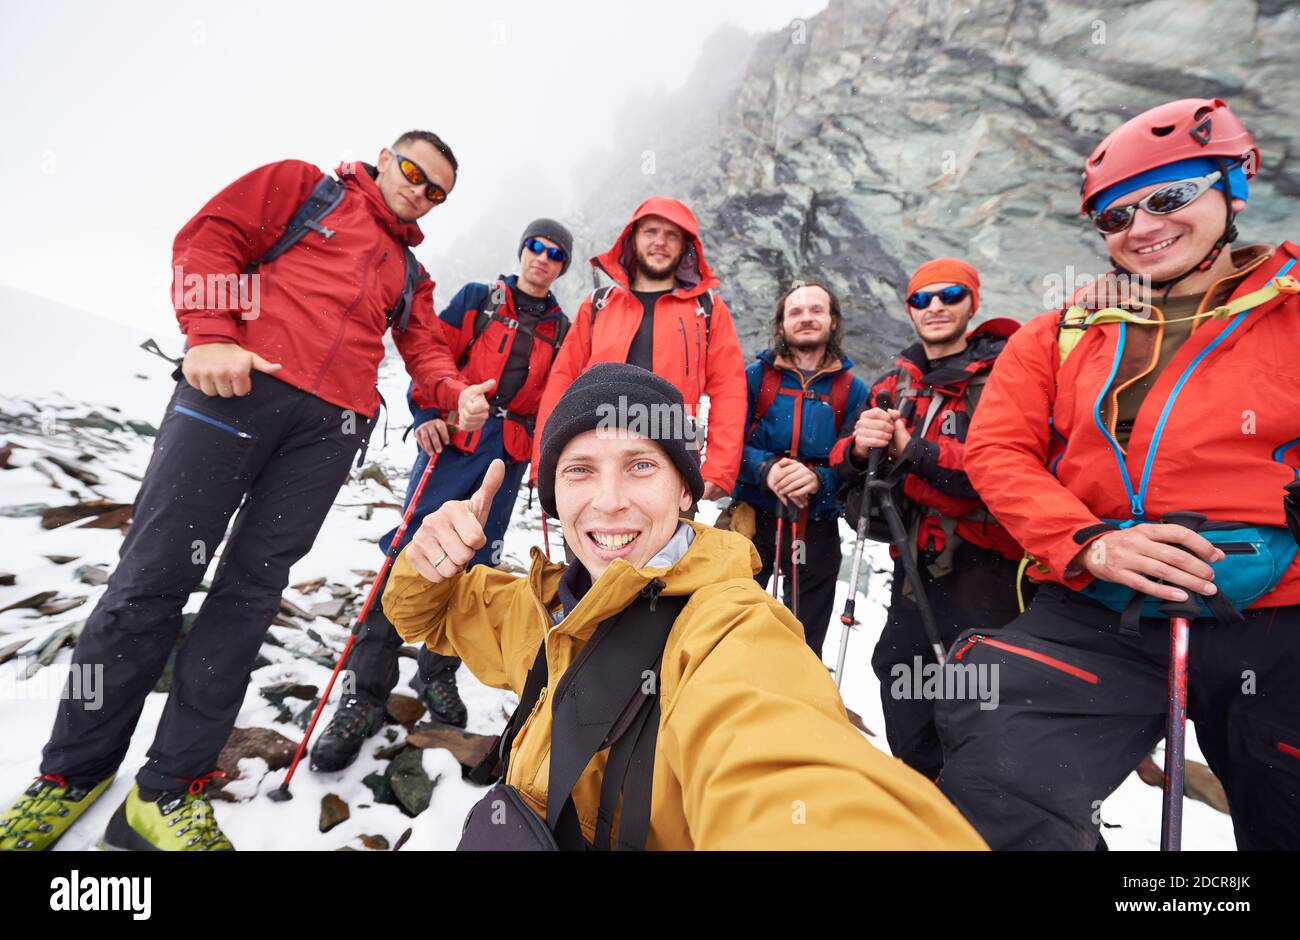 Junger Mann fotografiert mit Freunden Wanderer während der Reise in den Winterbergen. Gruppe von männlichen Reisenden, die die Kamera anschauten und lächelten und Daumen nach oben zeigten. Konzept von Reisen, Wandern und Fotografie. Stockfoto